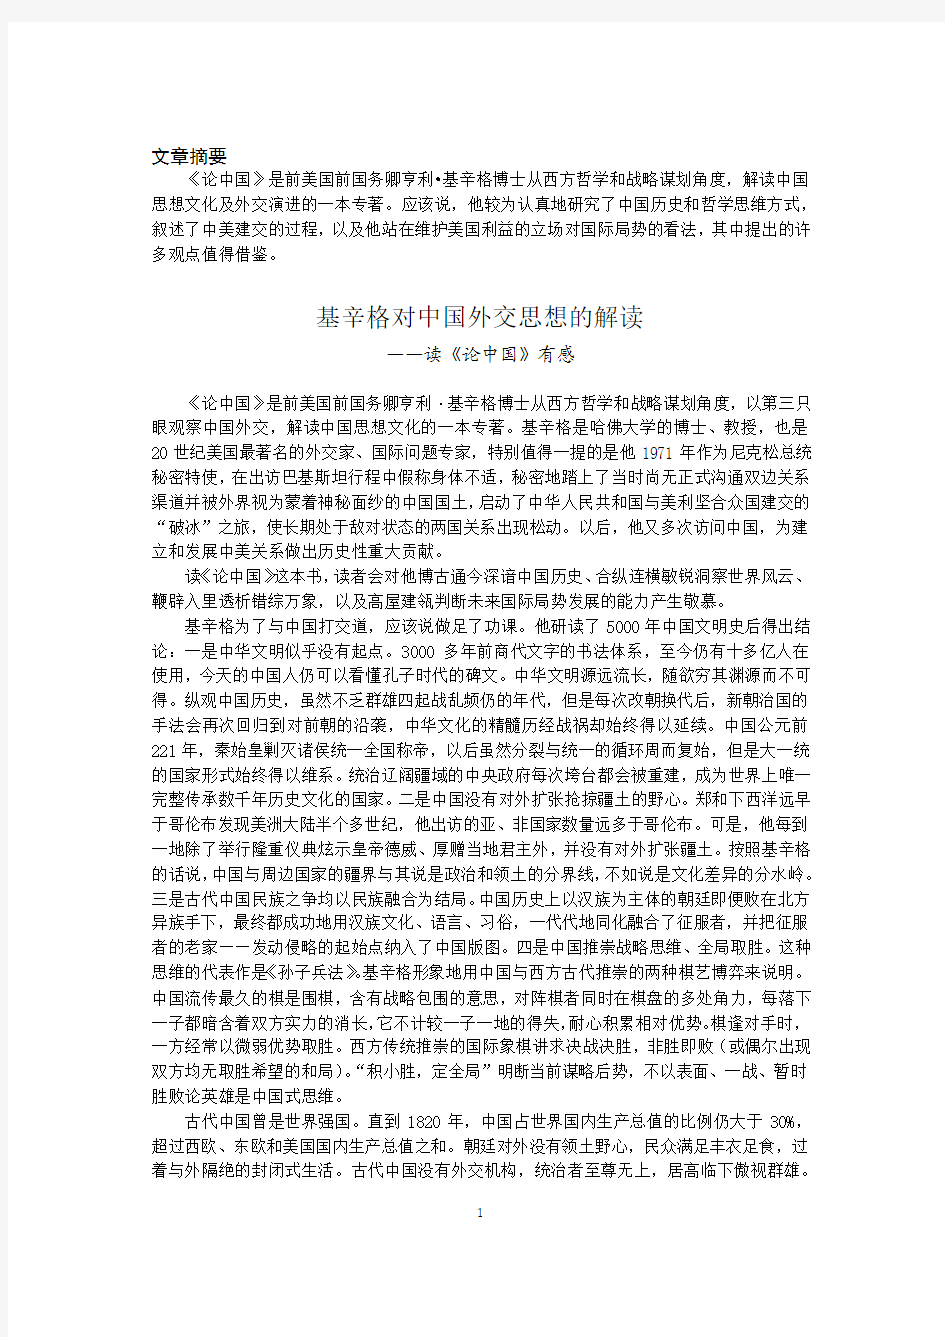 基辛格对中国外交思想的解读